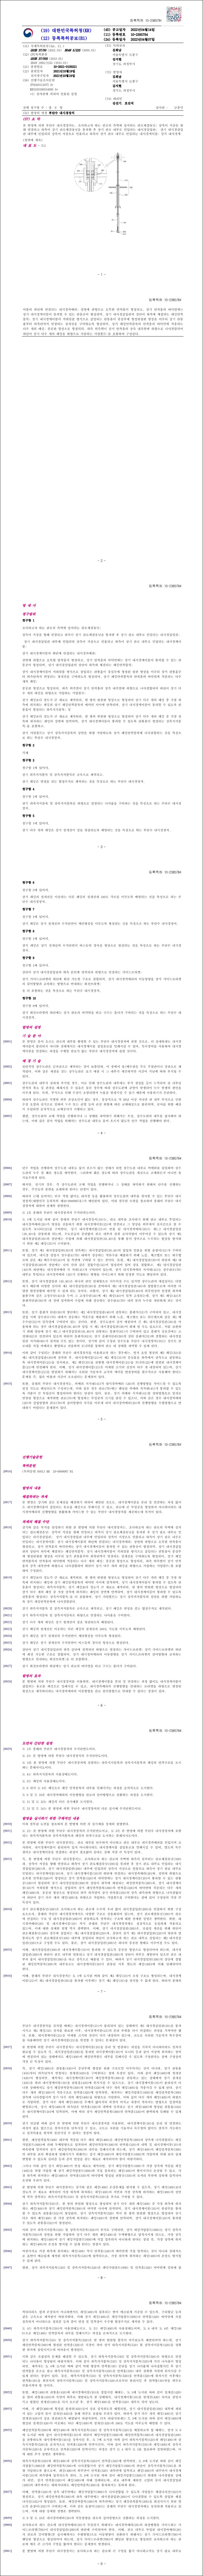 특허 제10-2385784호(부단수 내시경장치, 김희남, 김지현)